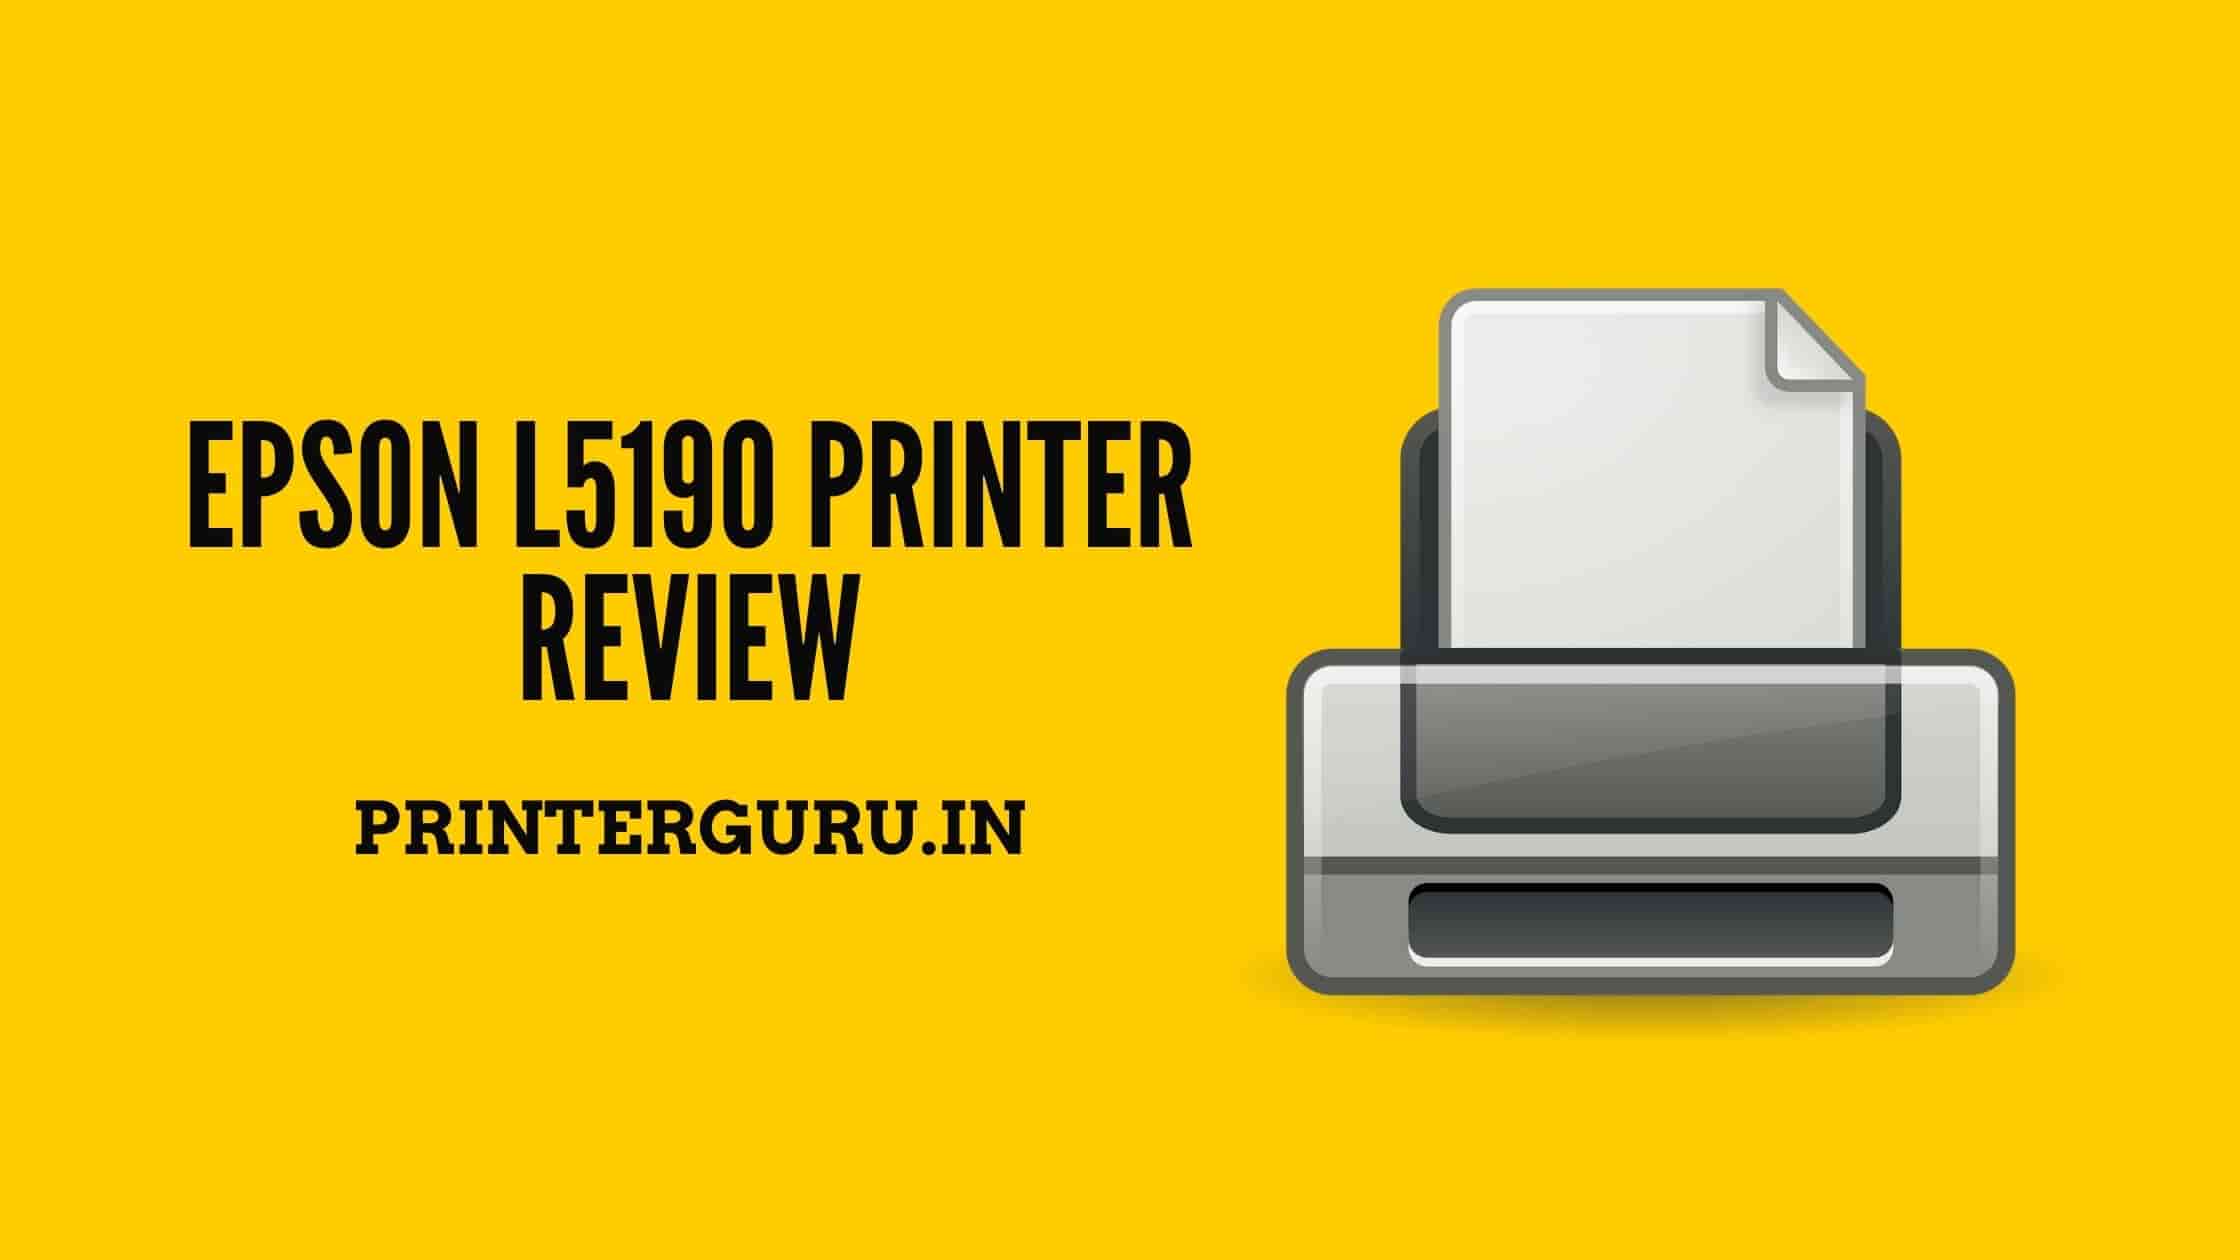 Epson L5190 Printer Review